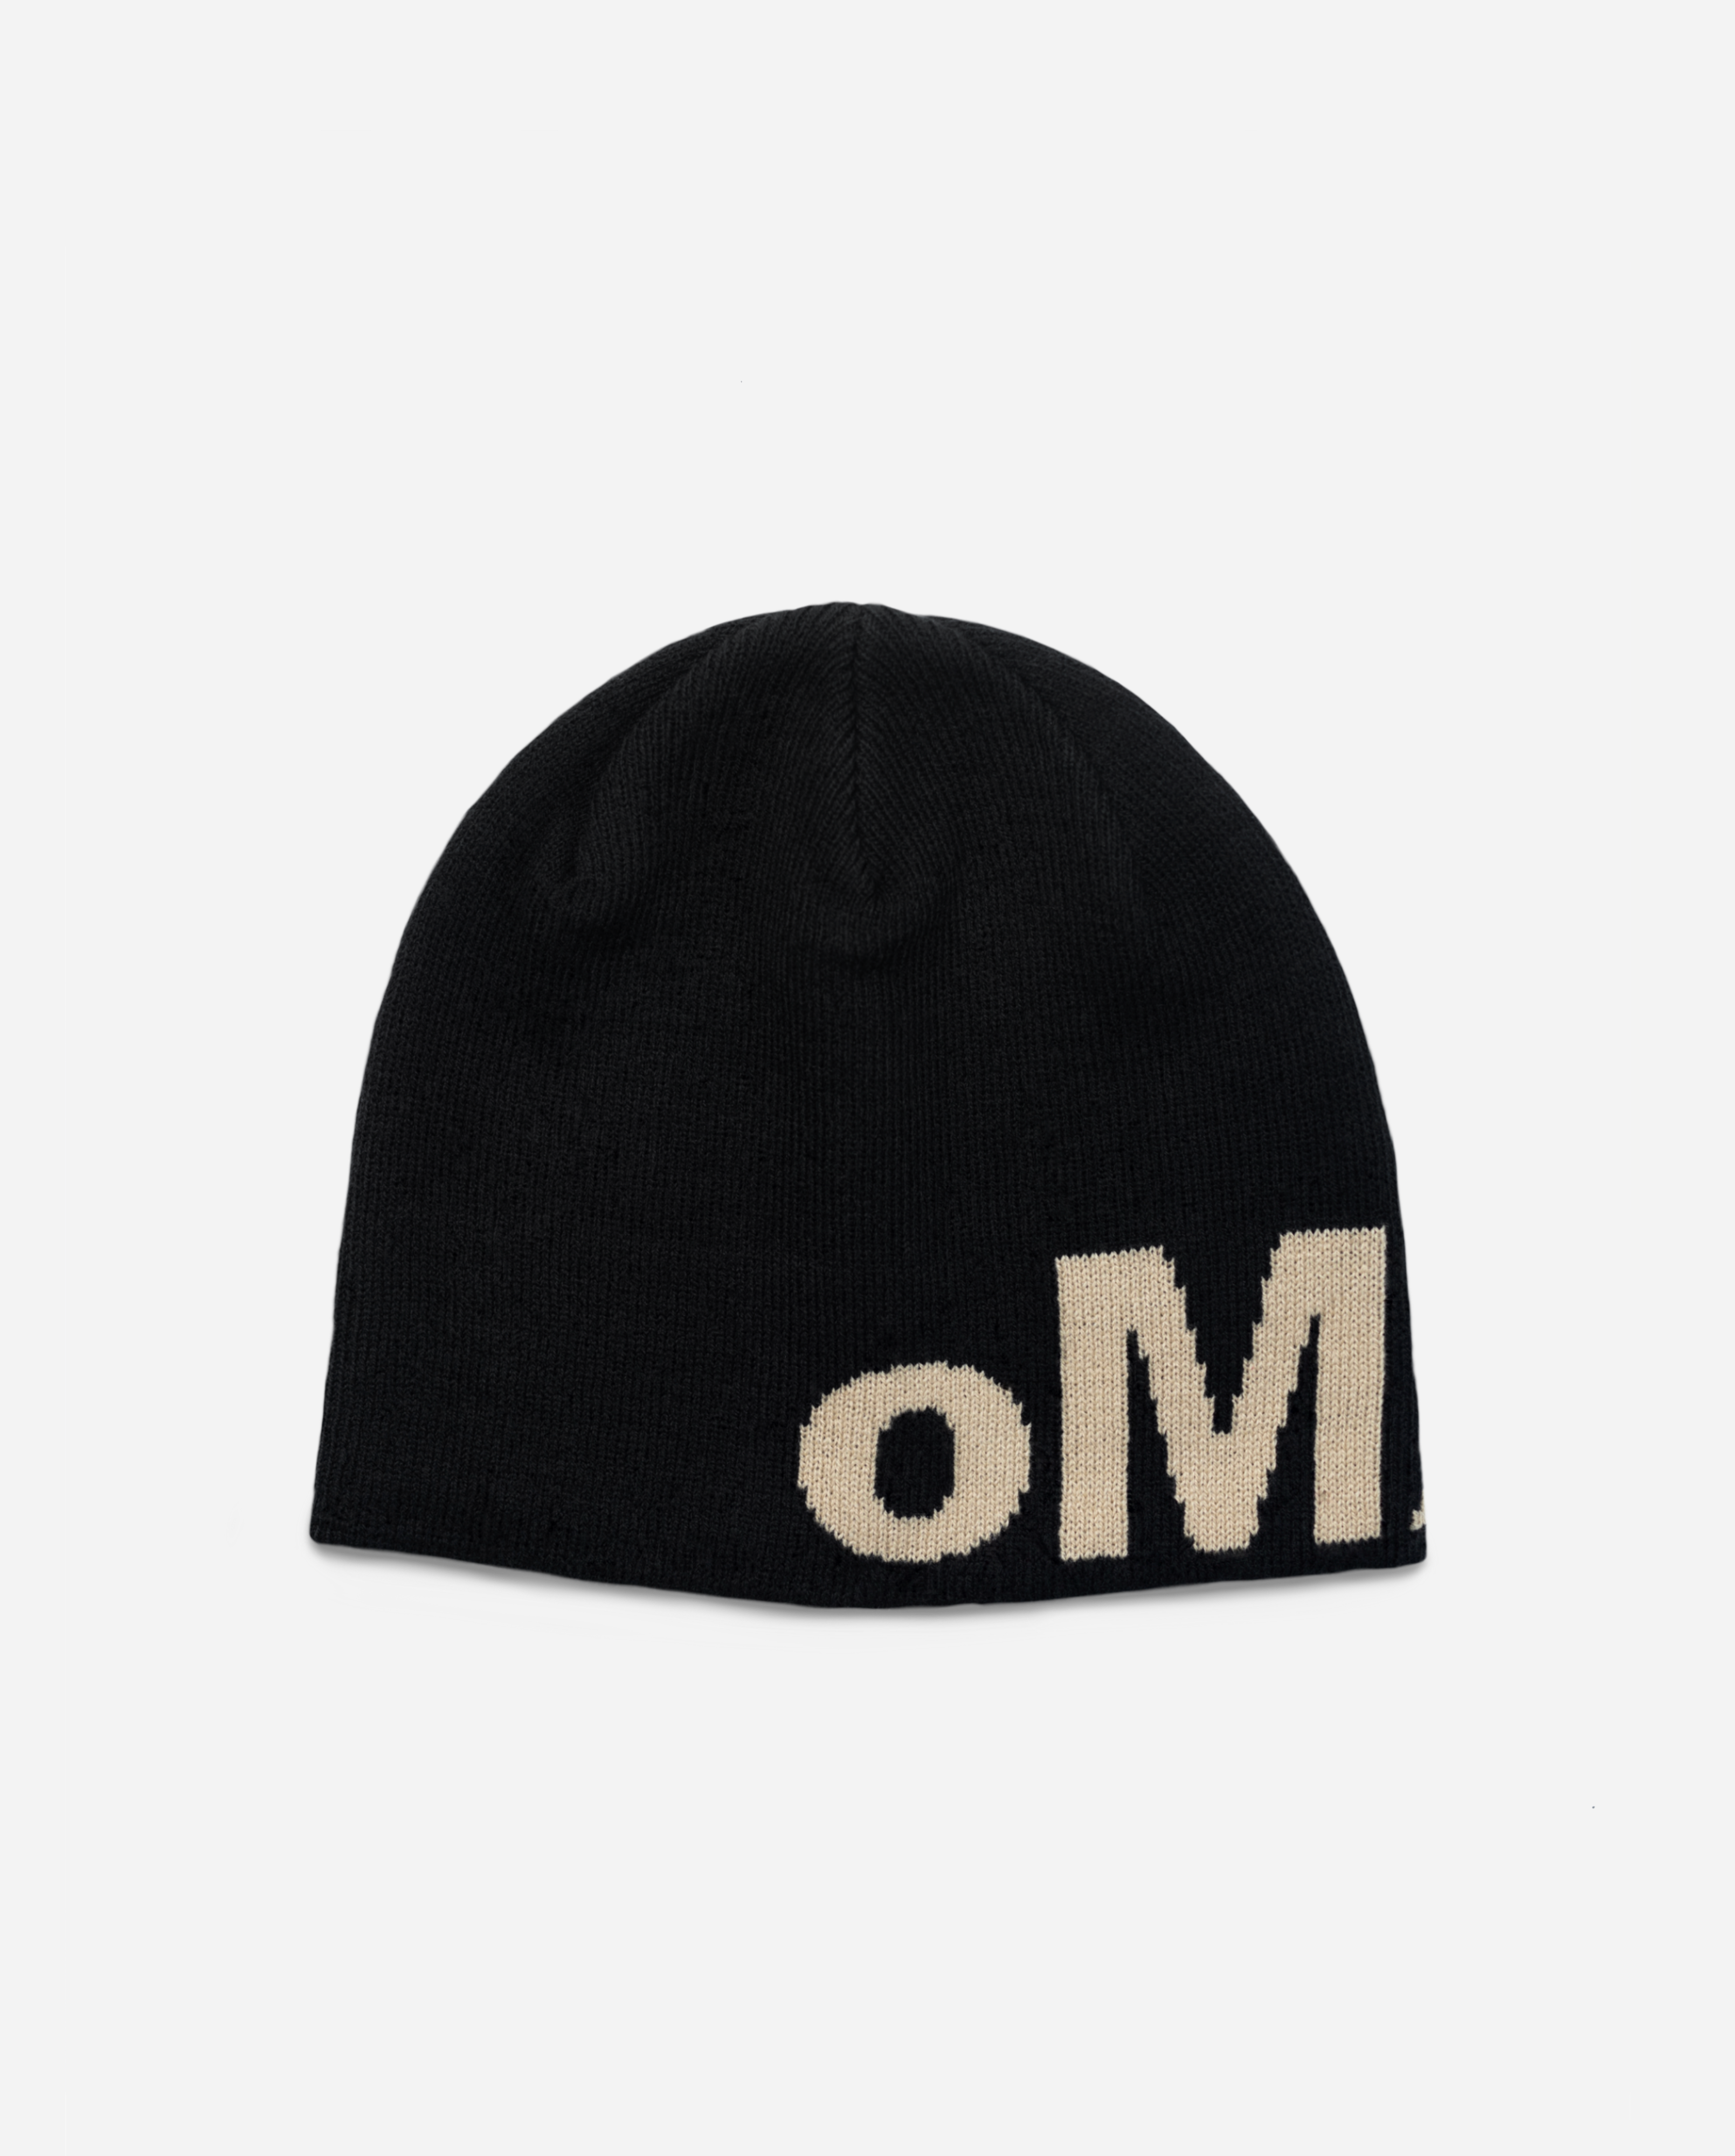 oMA OG SKULL CAP (BLACK/CREAM) – OLDMANALAN